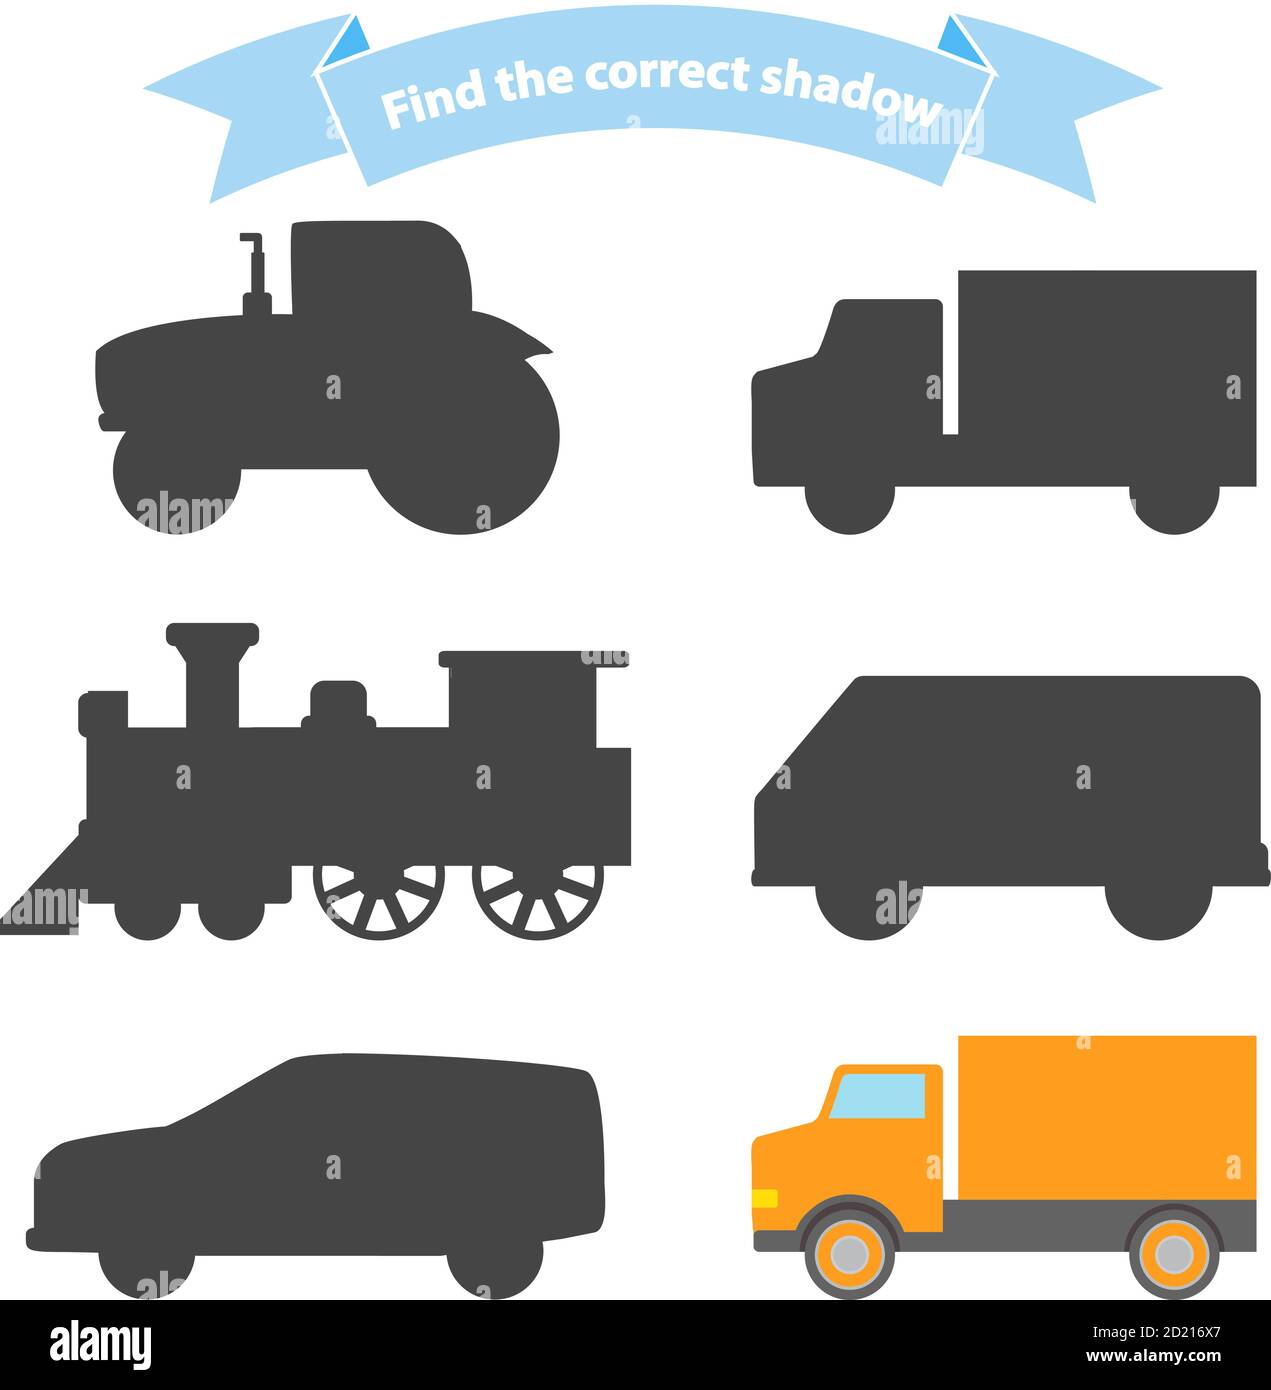 Finden Sie die richtige Schatten Transport.Educational Spiel für Kinder Auto, Dampflokomotive, LKW, Traktor, van. Stock Vektor